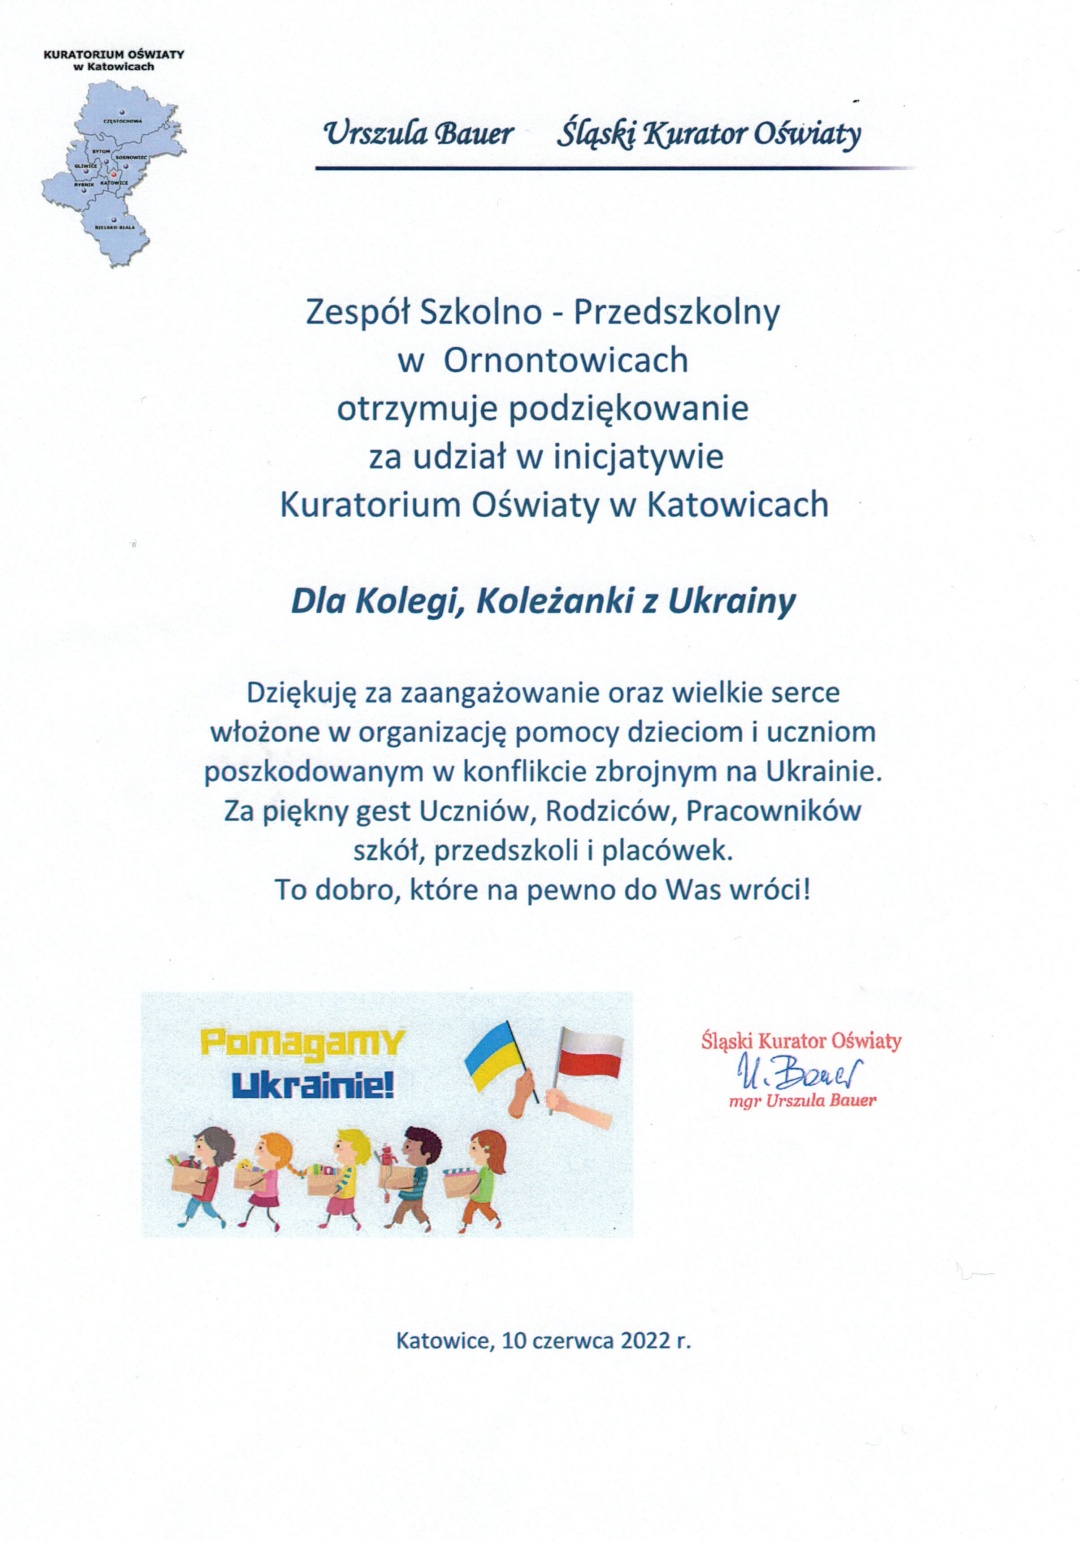 Podziękowanie dla Zespołu Szkolno - Przedszkolnego za udział w inicjatywie Kuratorium Oświaty w Katowicach - Dla kolegi, koleżanki z Ukrainy